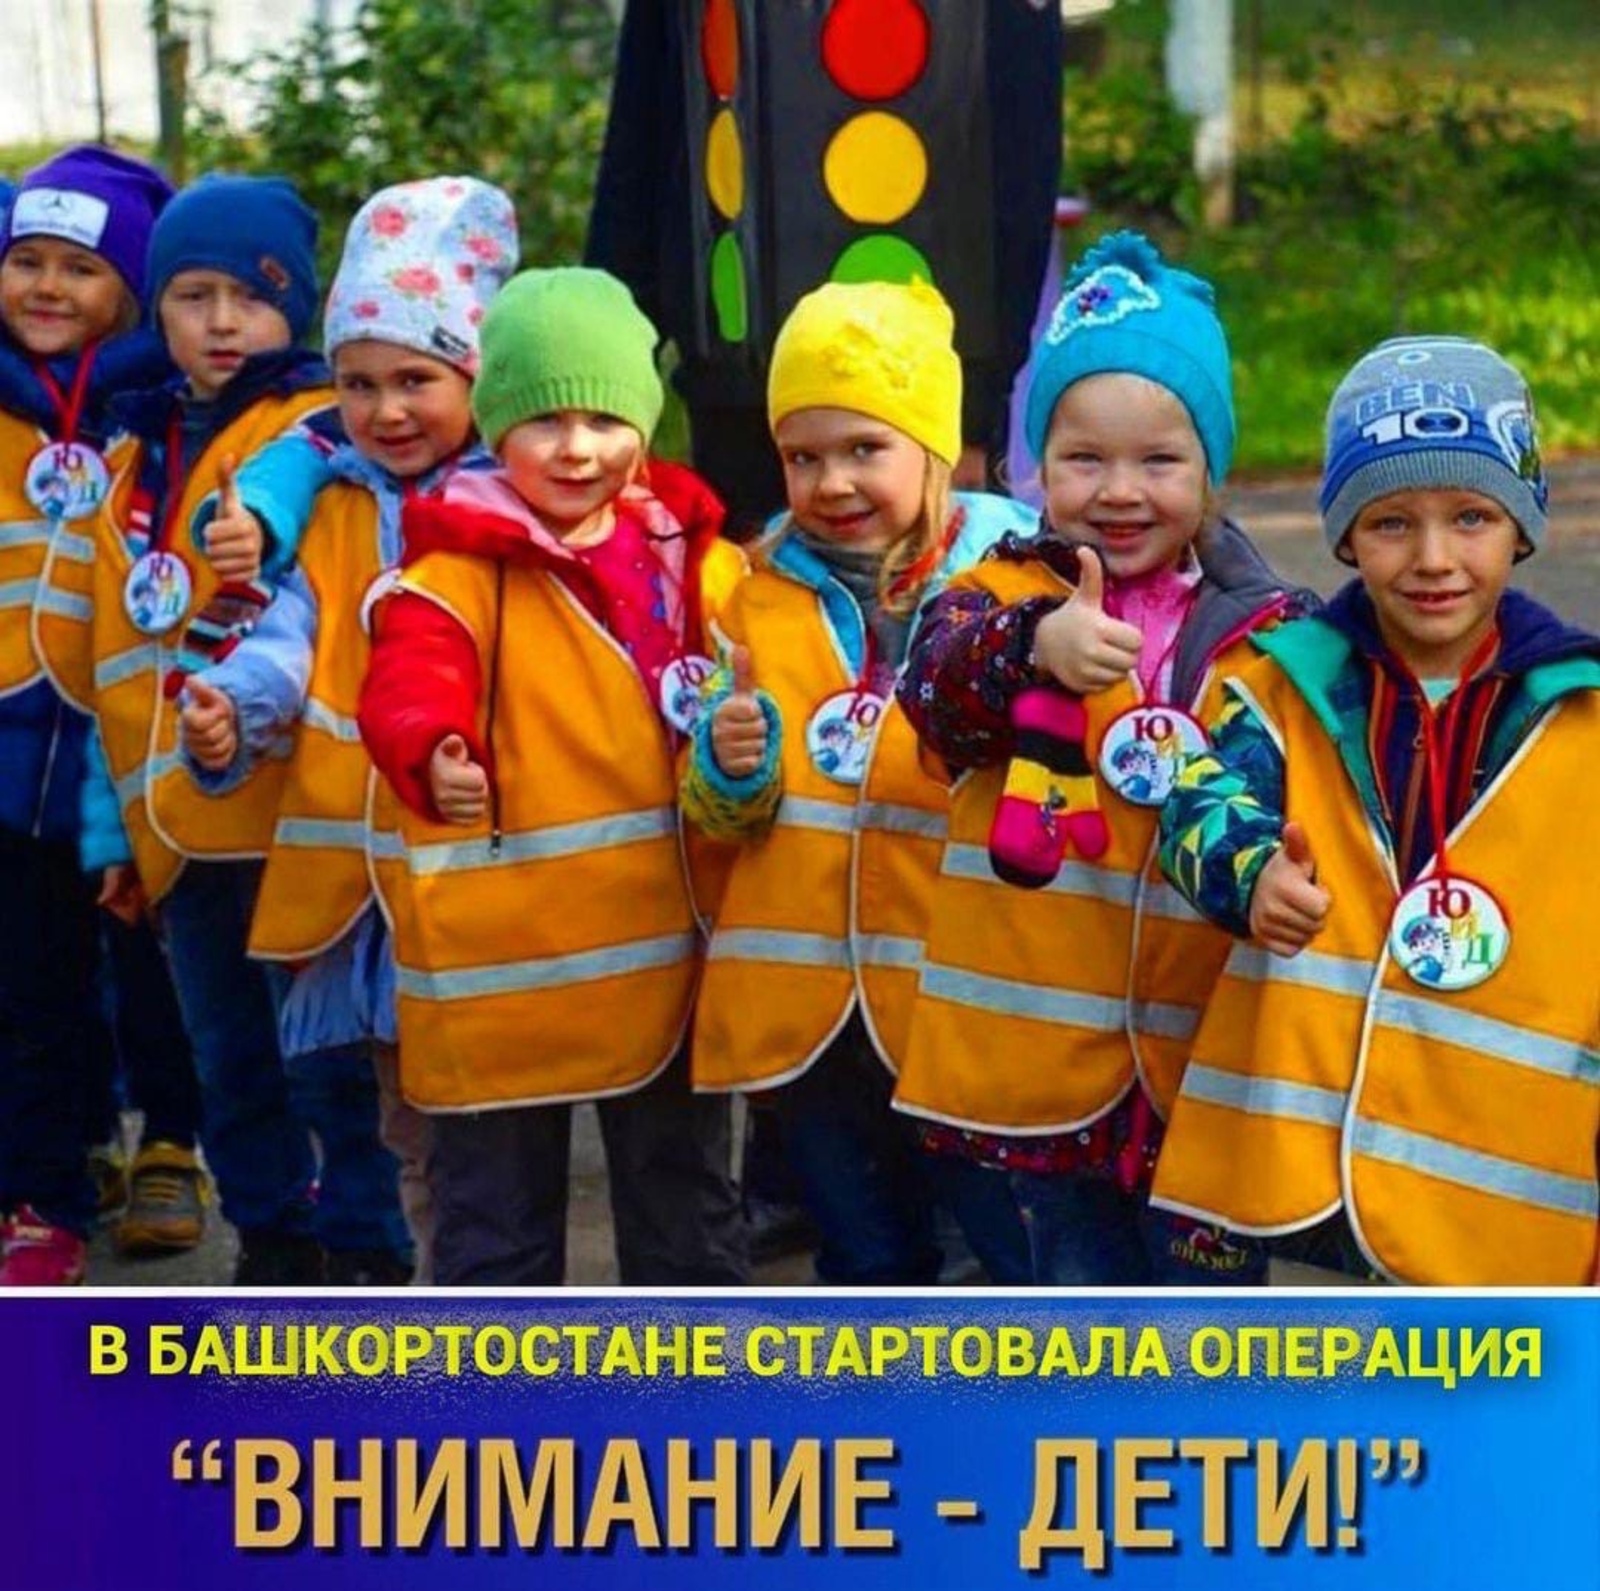 В Башкирии ГИБДД и органы образования с 25 октября начали проведение профилактических мероприятий "Внимание – дети!".